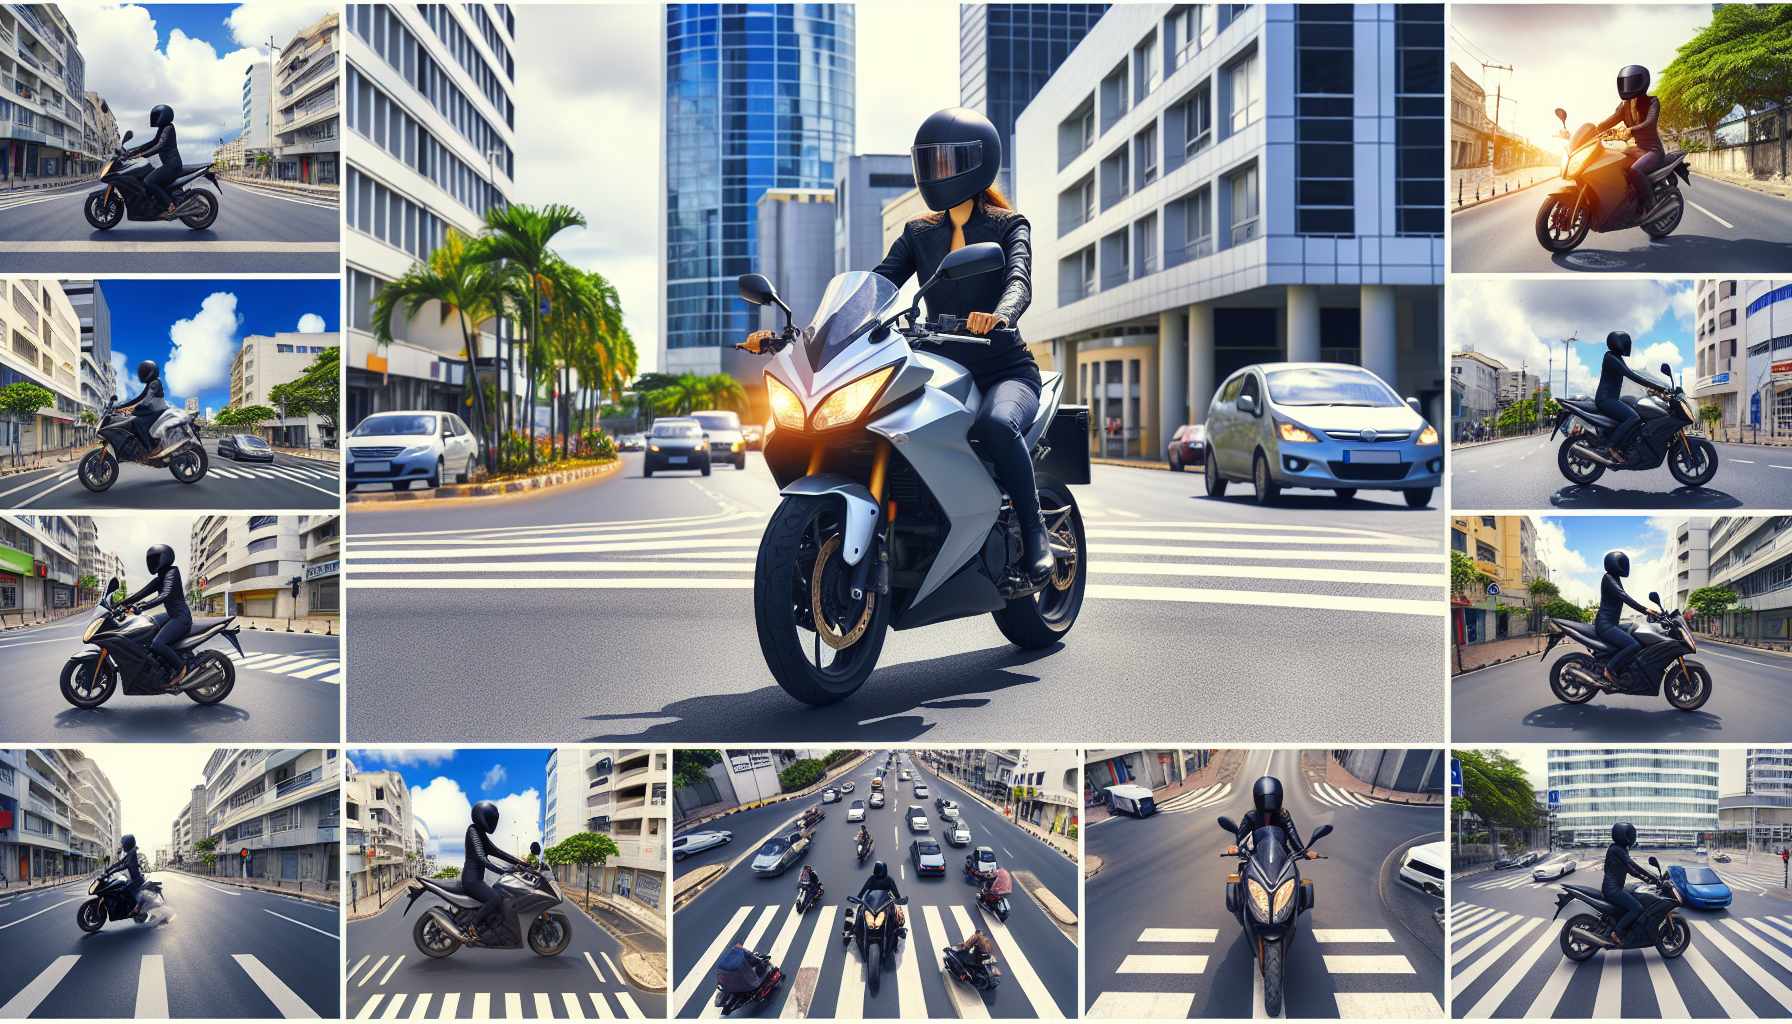 découvrez comment maîtriser la circulation urbaine à la réunion en toute sécurité avec une assurance moto adaptée à vos besoins.